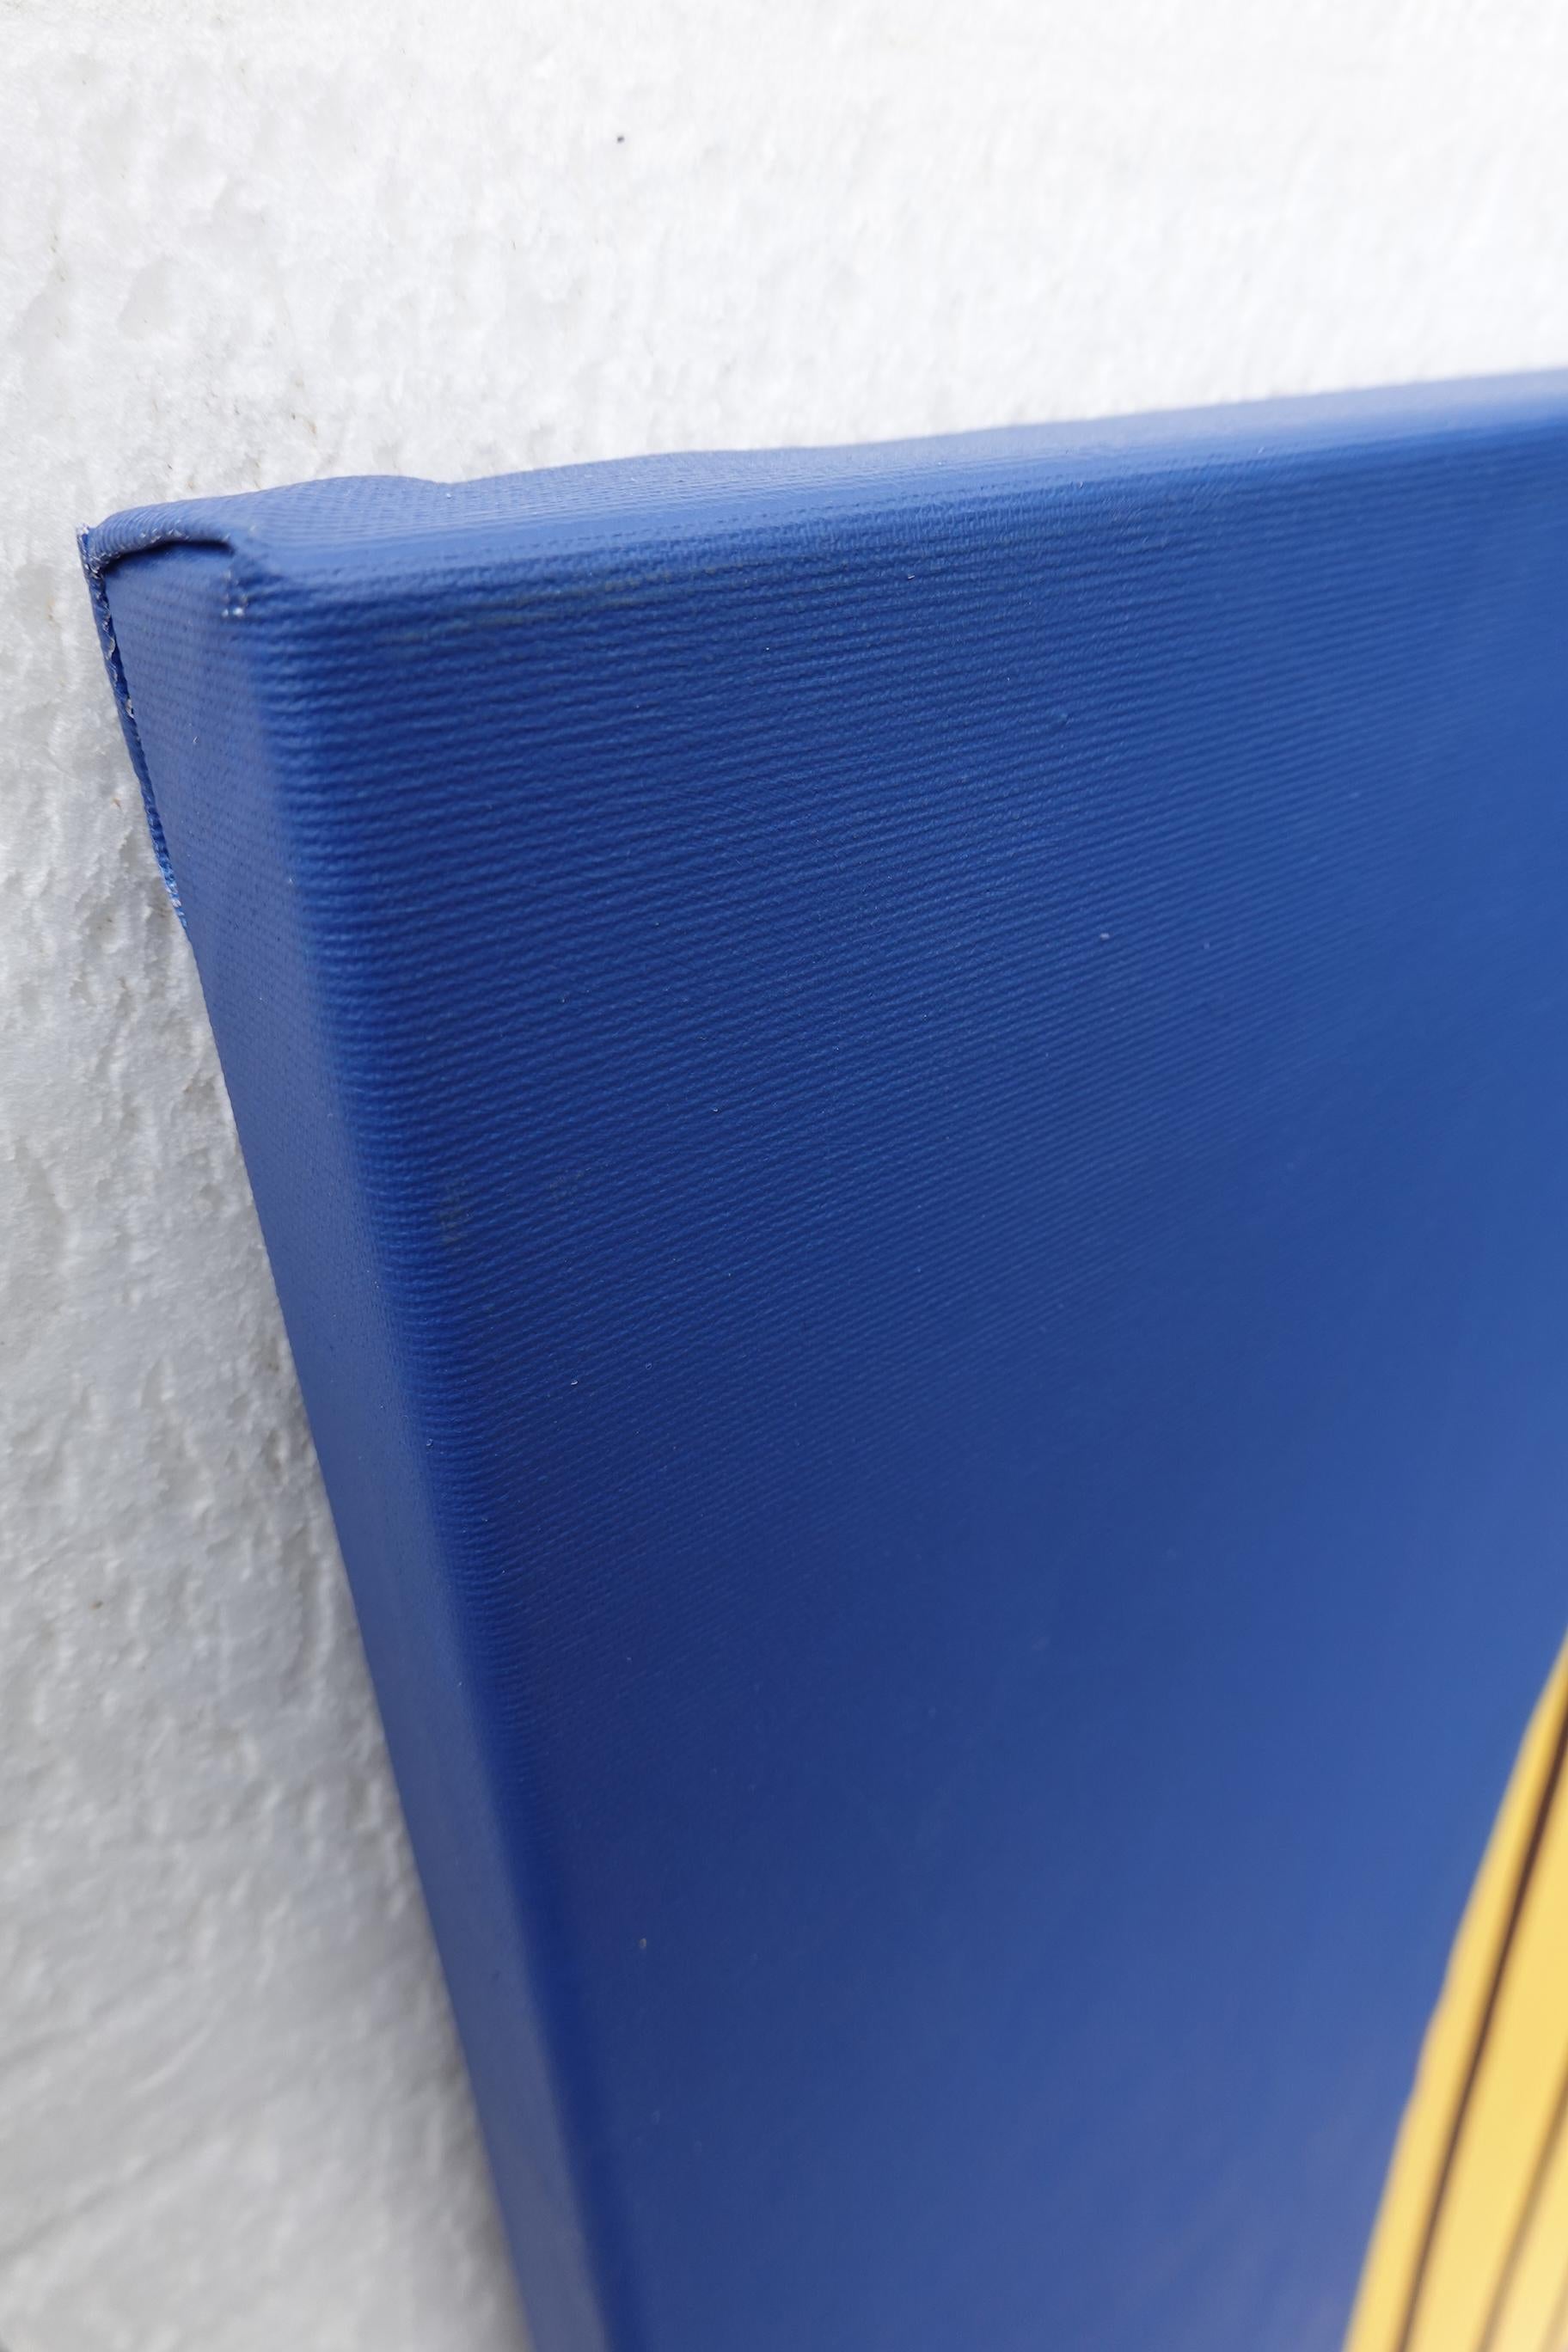 « Beaming I », peinture acrylique abstraite sur toile jaune foncé sur bleu cobalt royal - Bleu Abstract Painting par Amanda Andersen